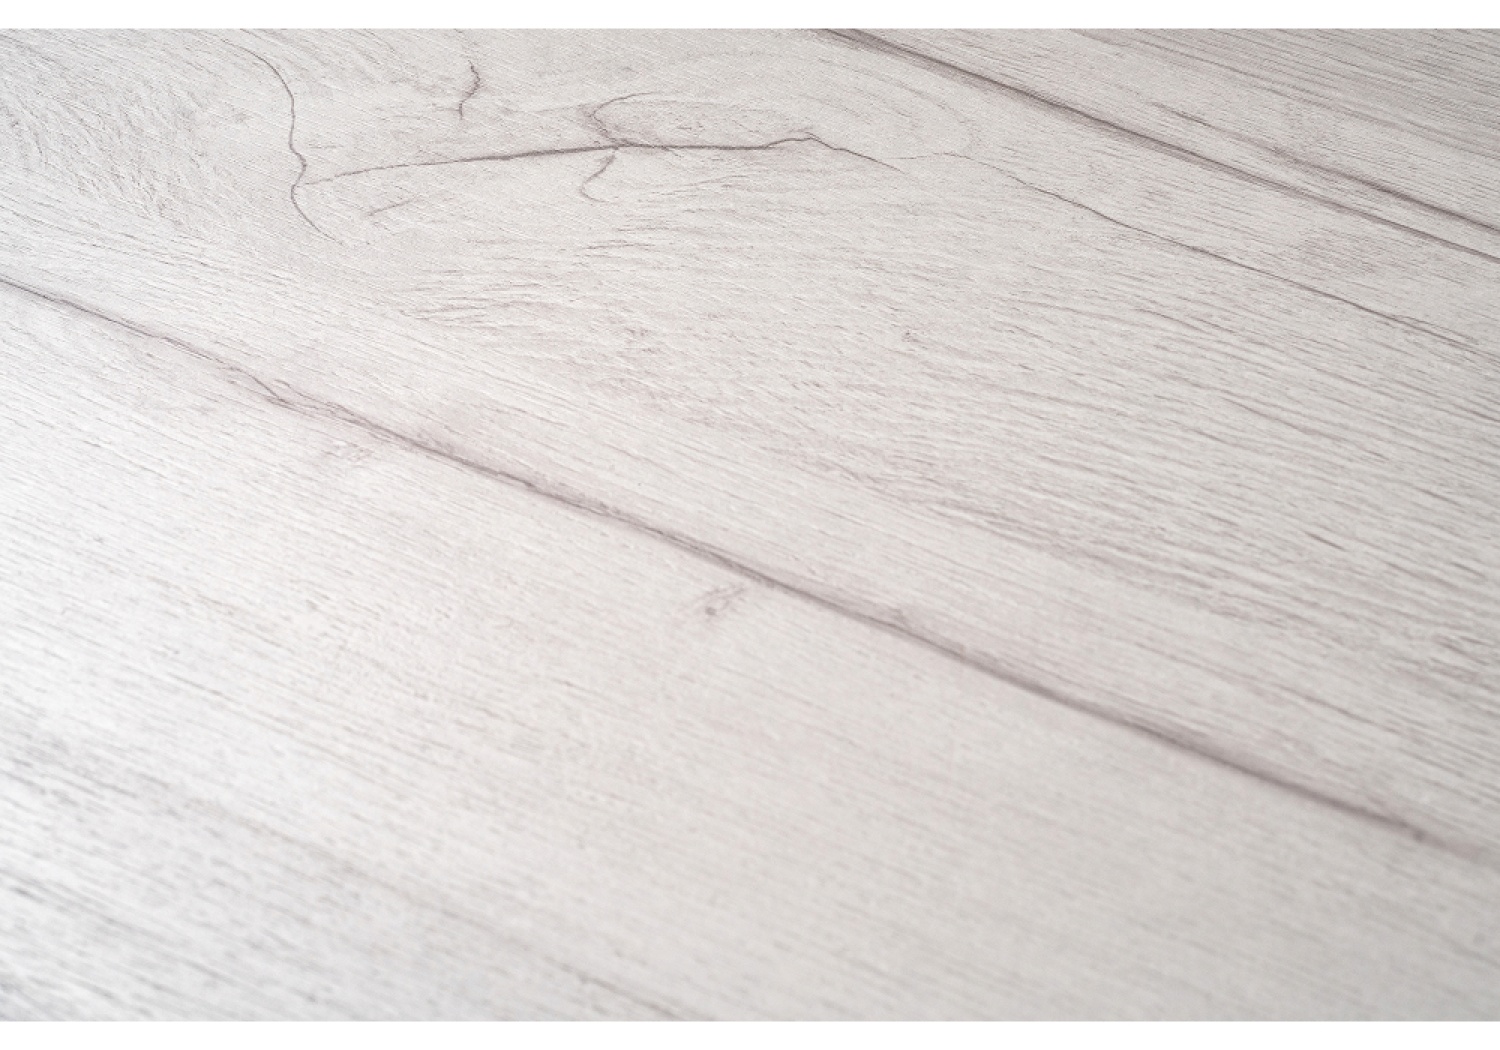 Деревянный стол Лота Лофт 140 25 мм юта / белый матовый